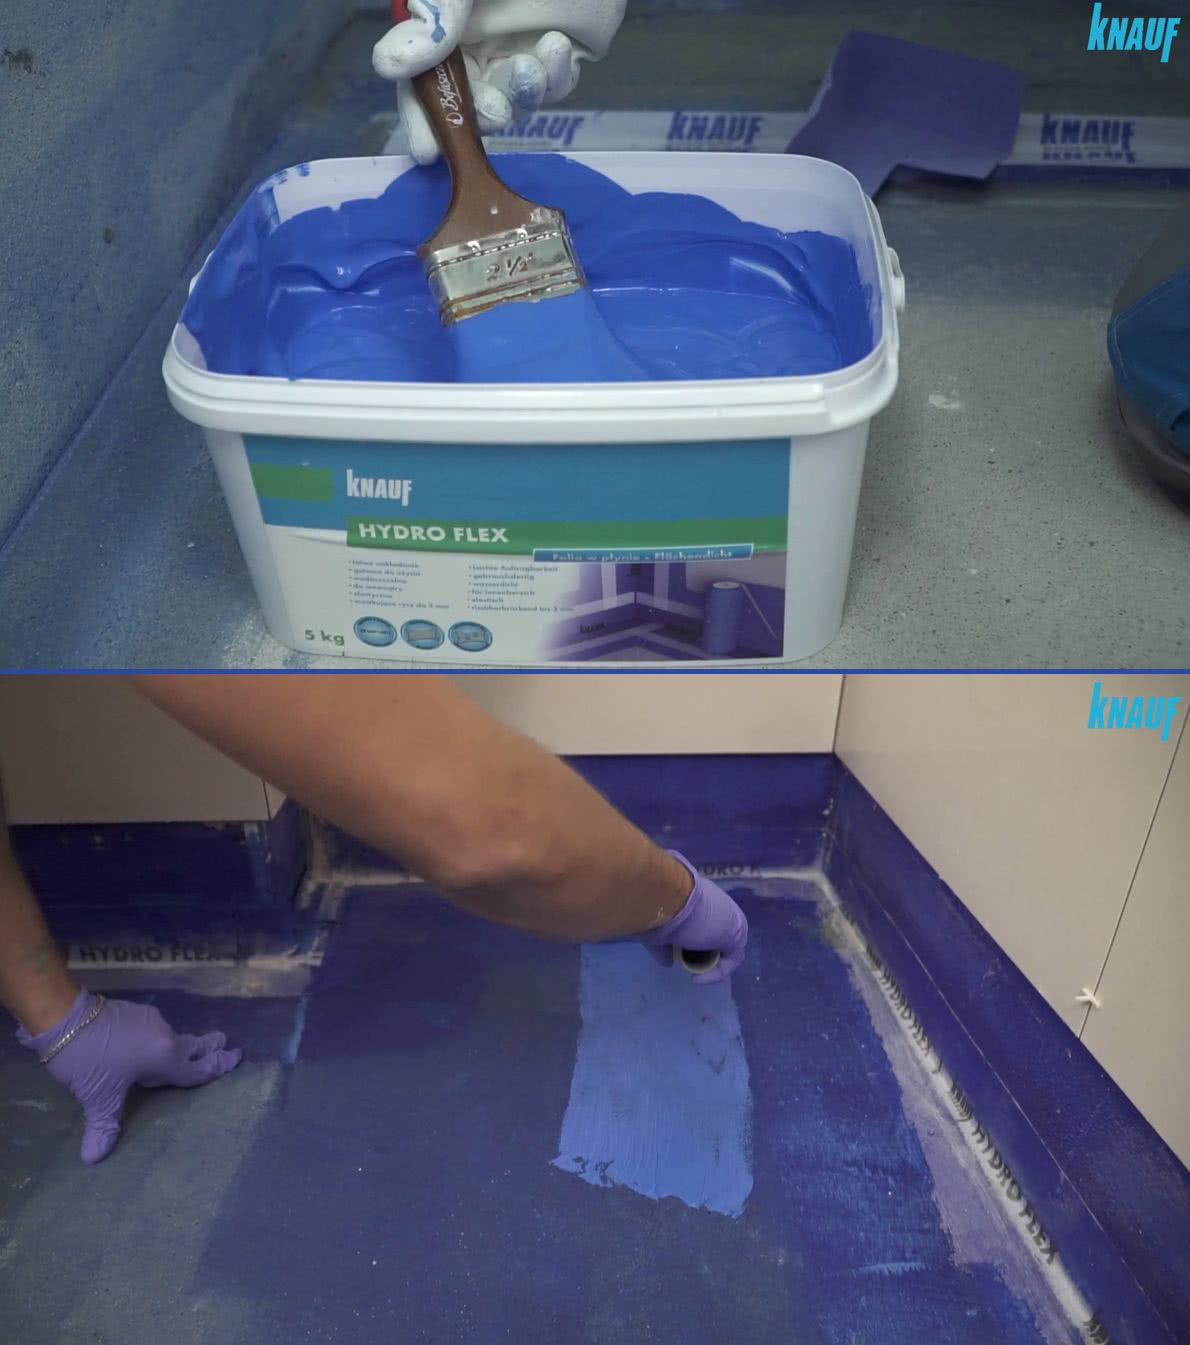 Wykonanie hydroizolacji w łazience za pomocą folii w płynie Knauf Hydro Flex. fot. Knauf